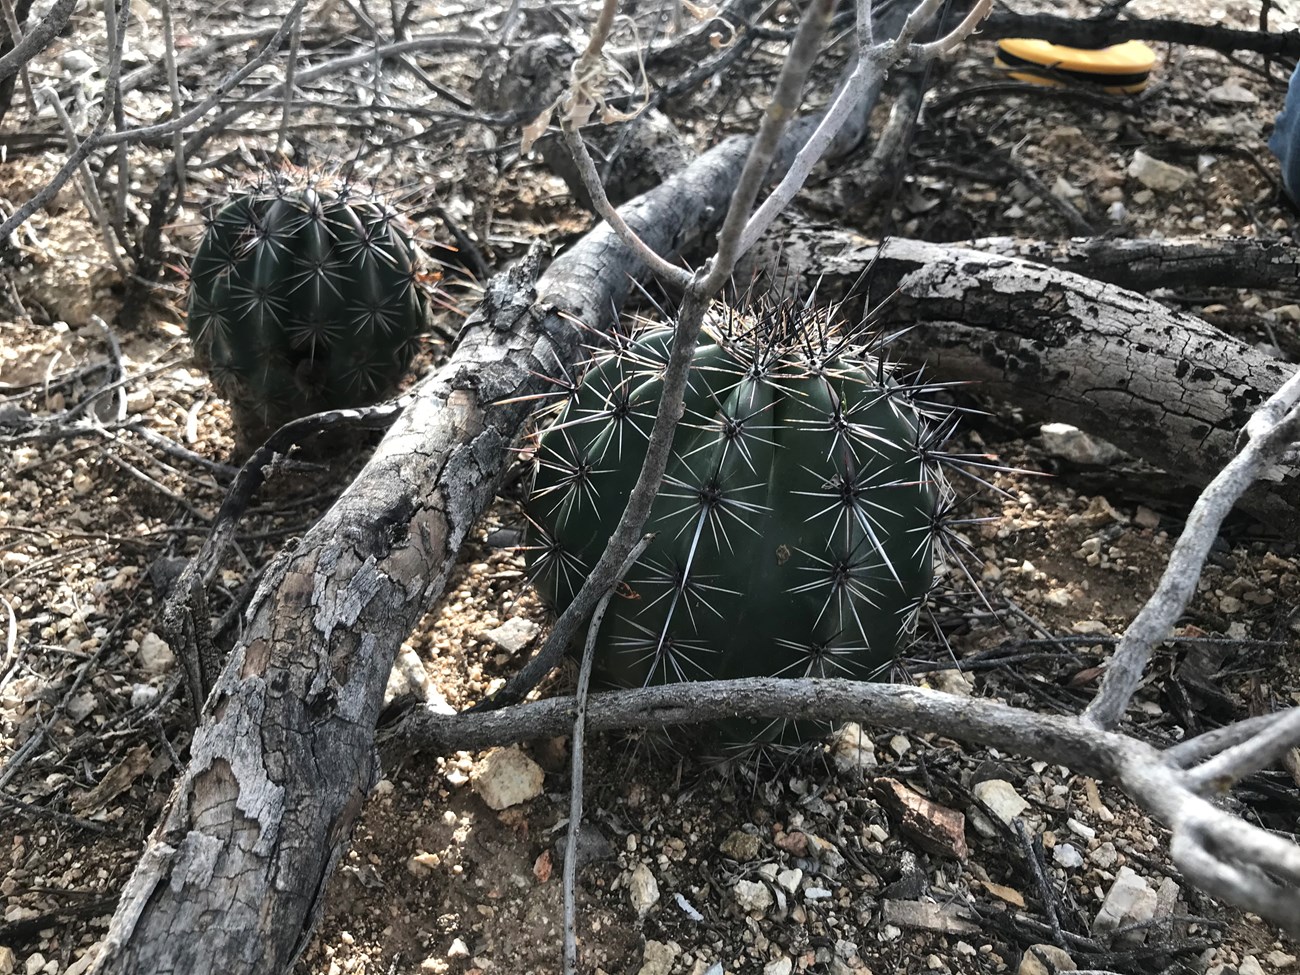 Two small saguaros